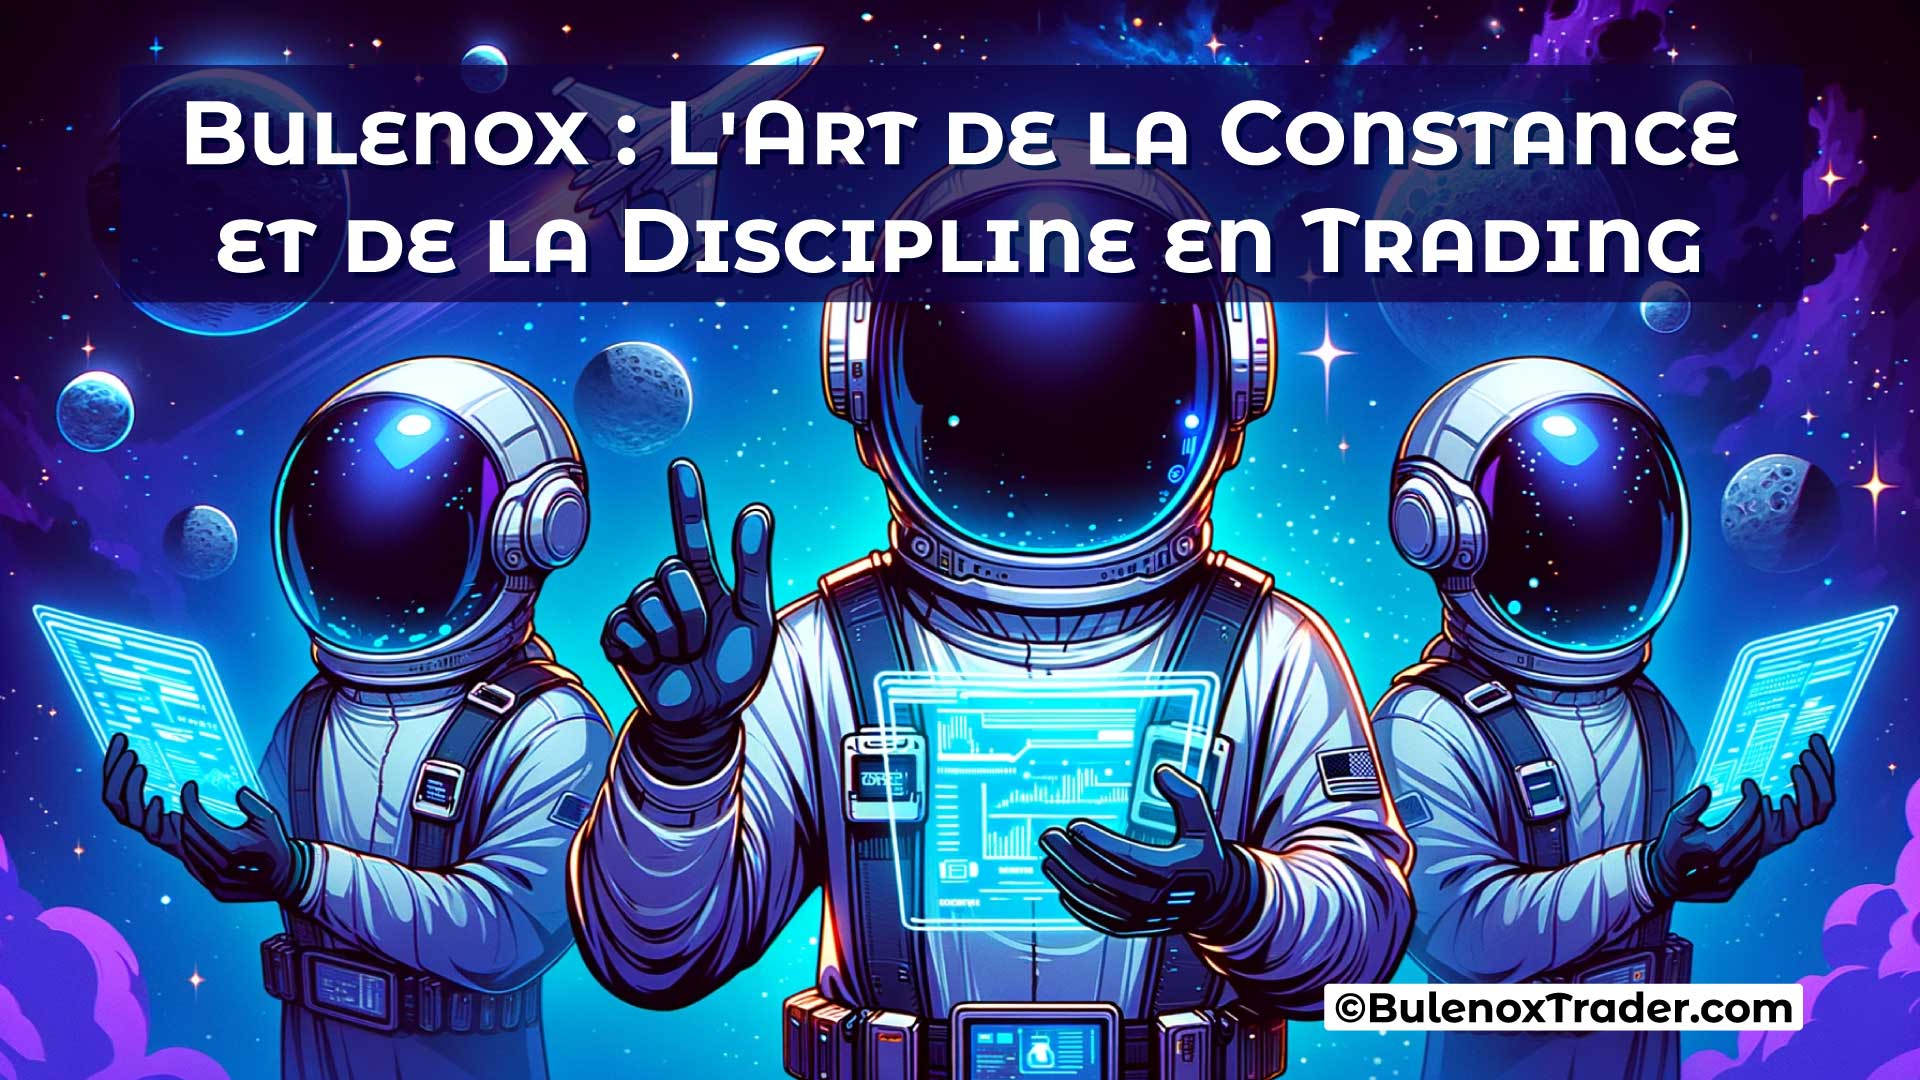 Bulenox-L'Art-de-la-Constance-et-de-la-Discipline-en-Trading-on-Bulenox-Trader-Website